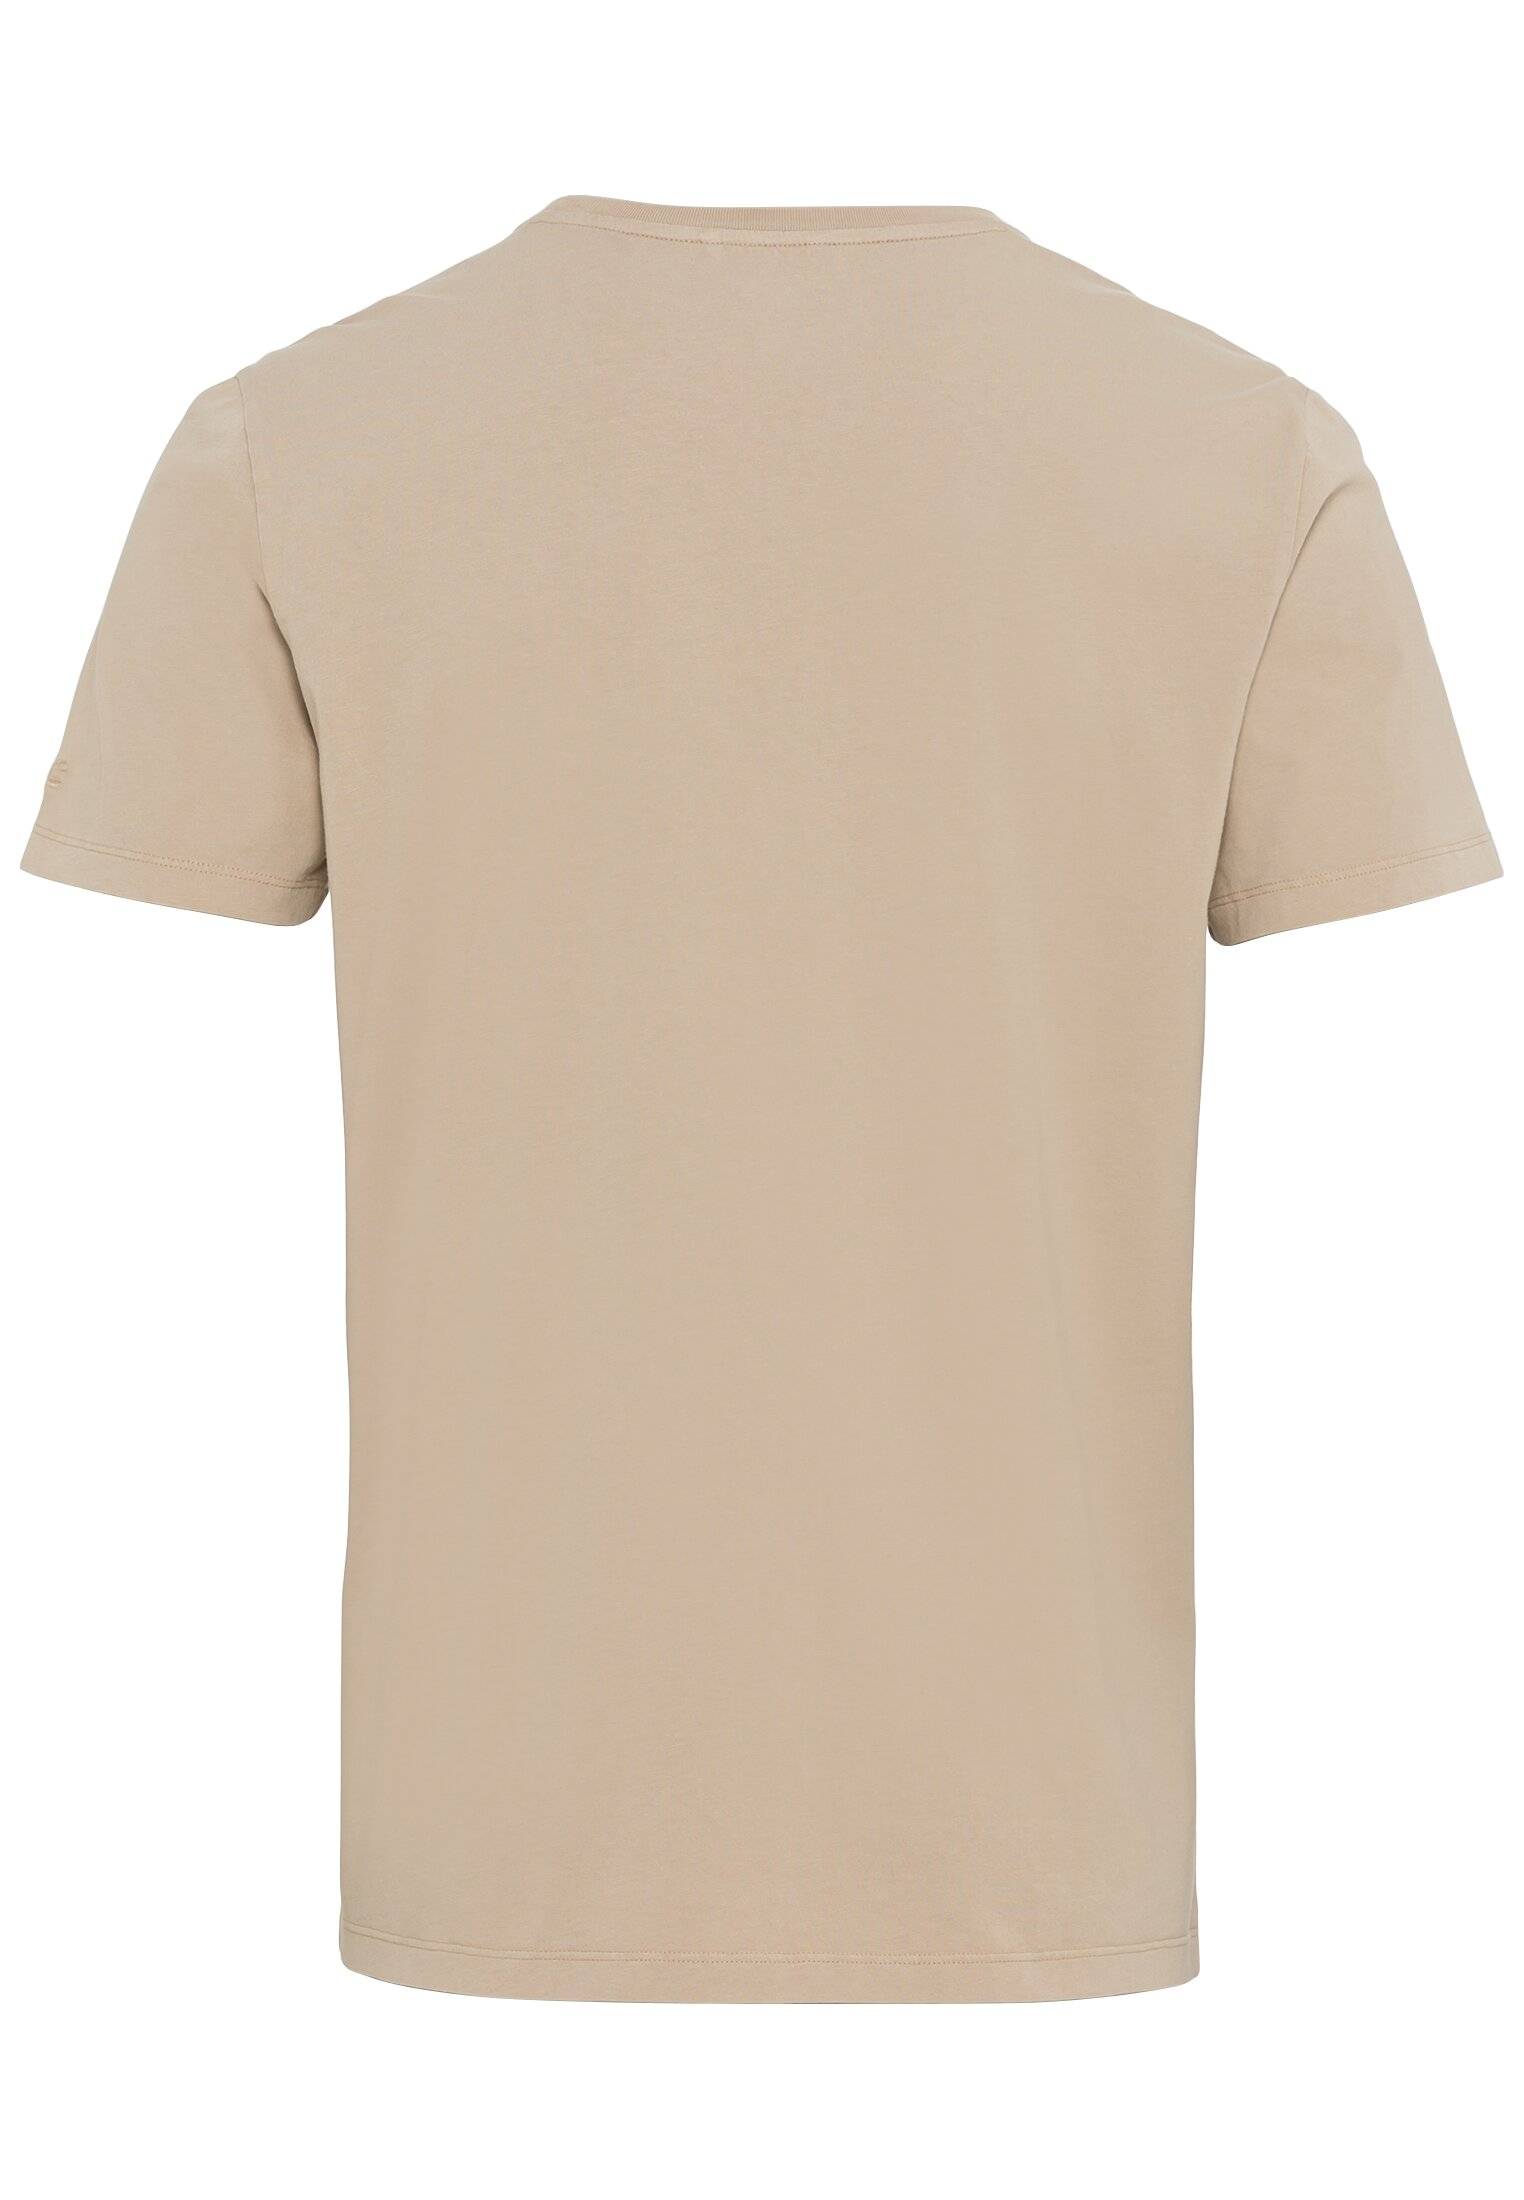 Мужская футболка Camel Active, песочная, цвет песочный, размер 56 - фото 2